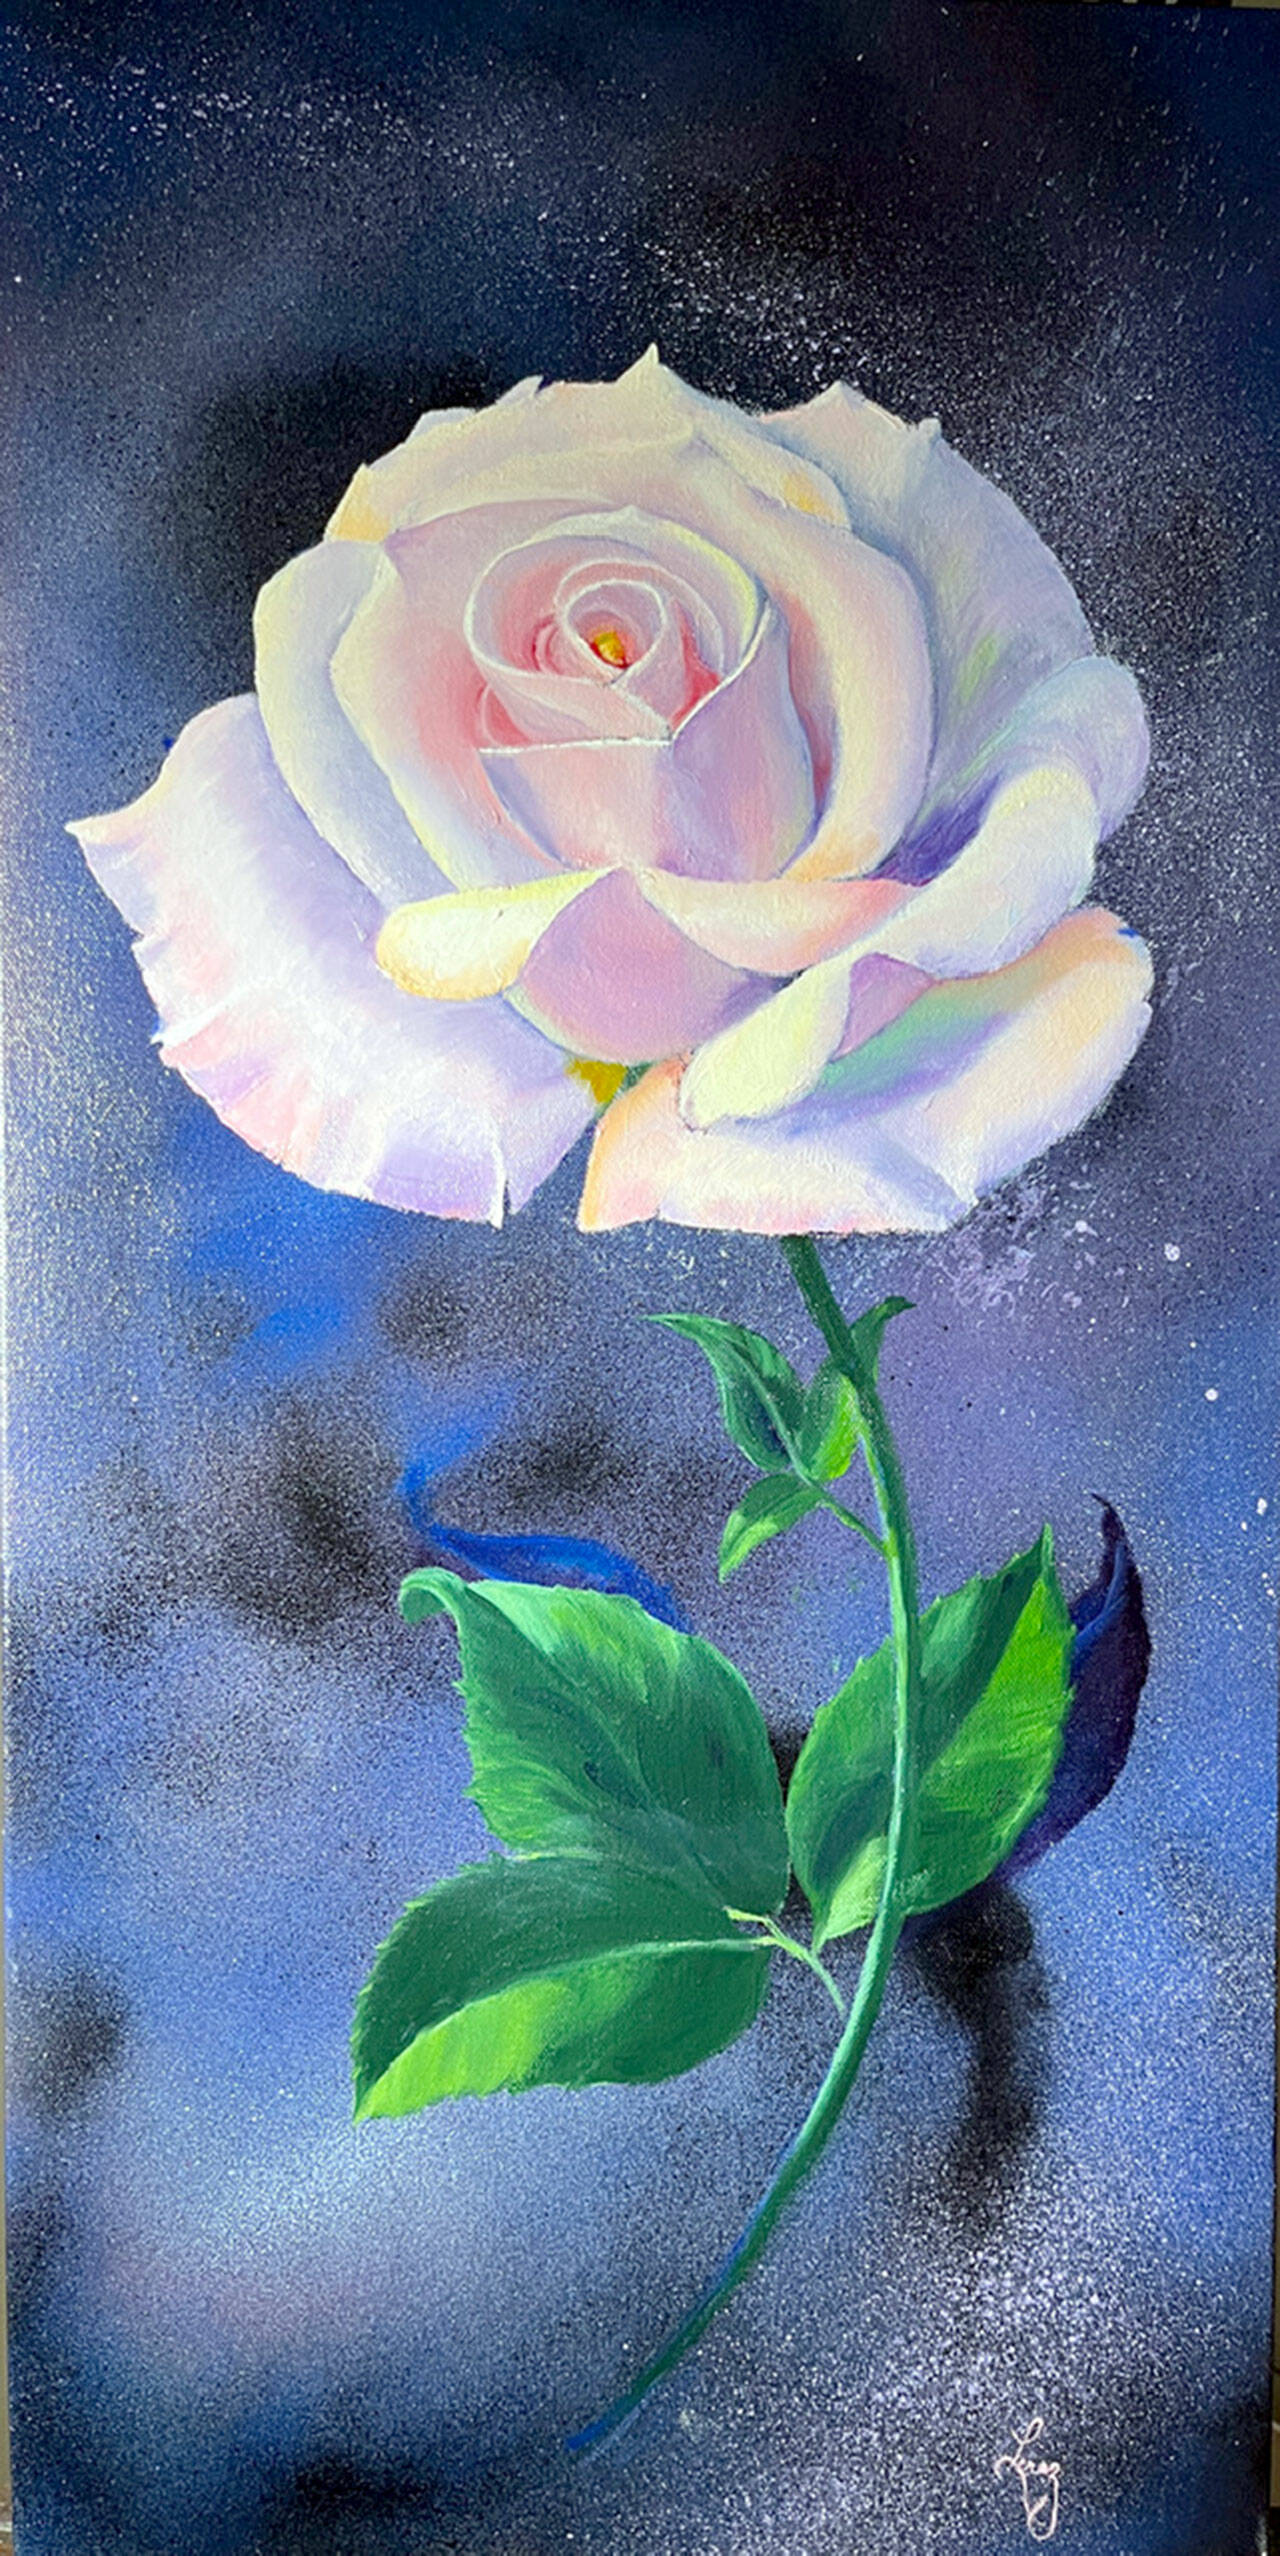 Star Blossom by Lucrezia Cuen Paxson.